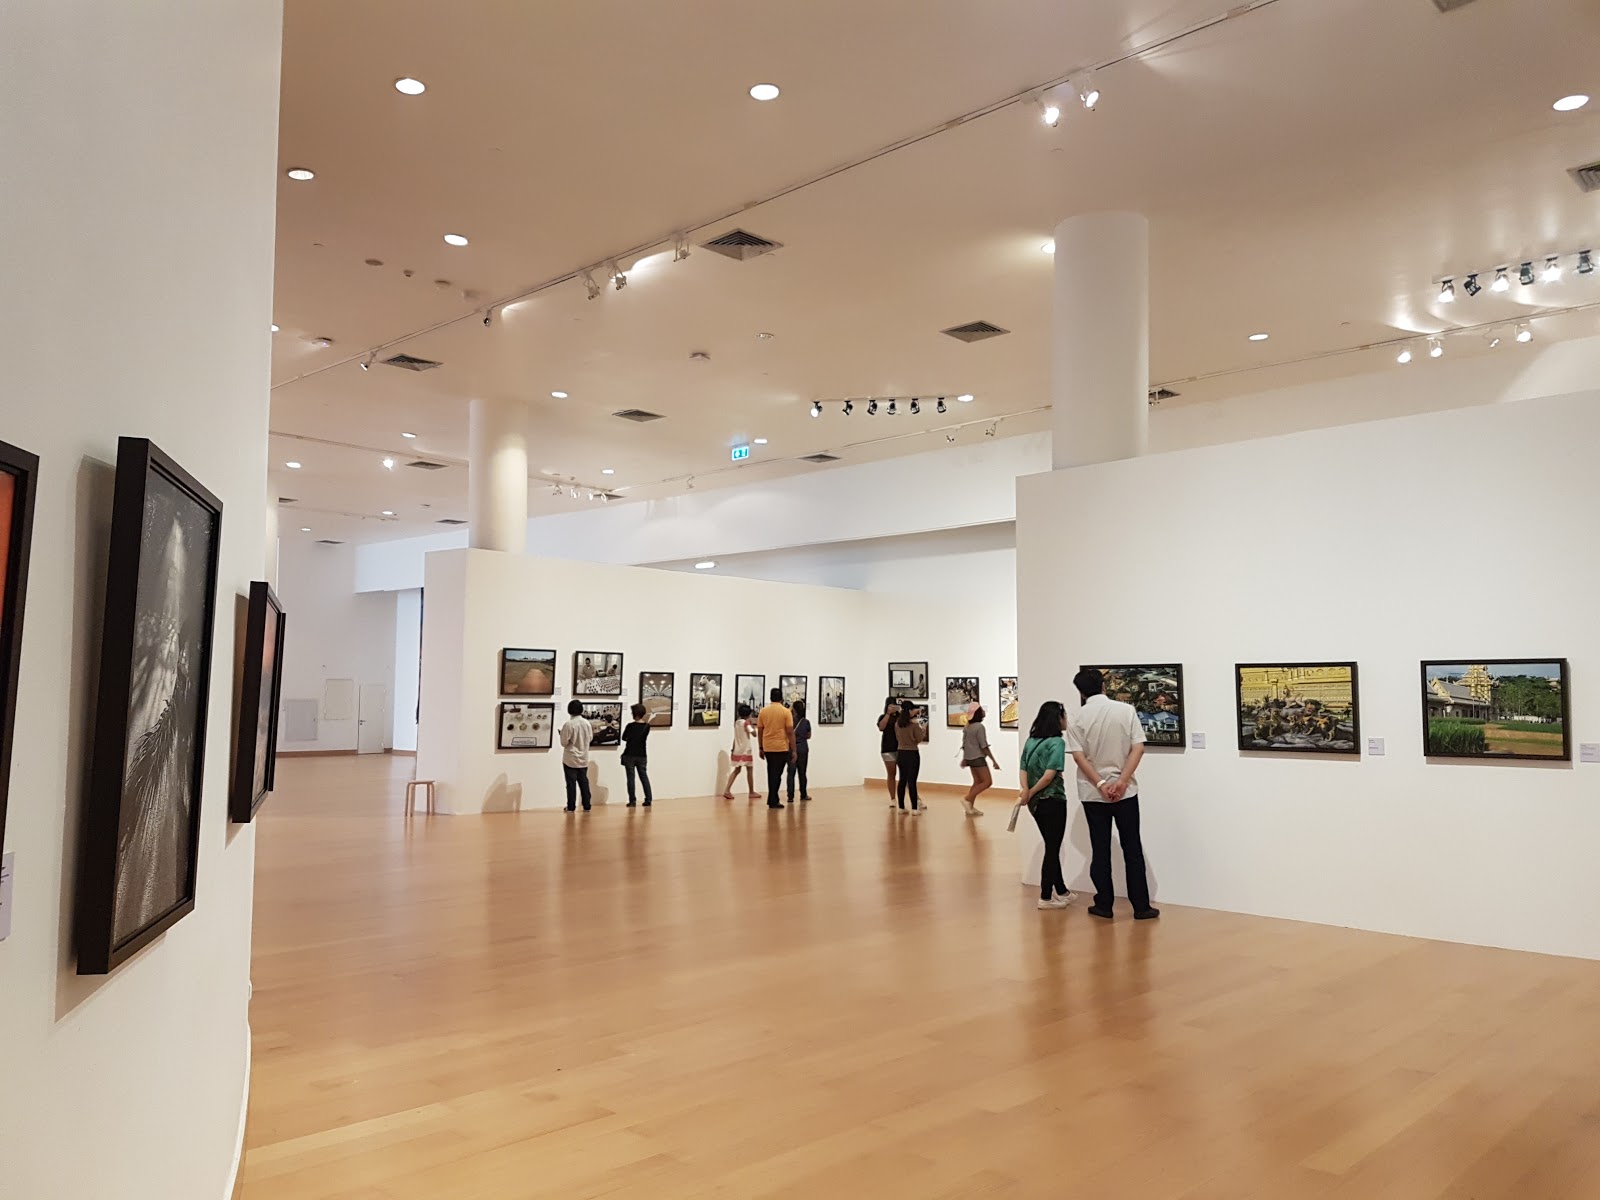 Bangkok Art & Culture Centre (BACC)